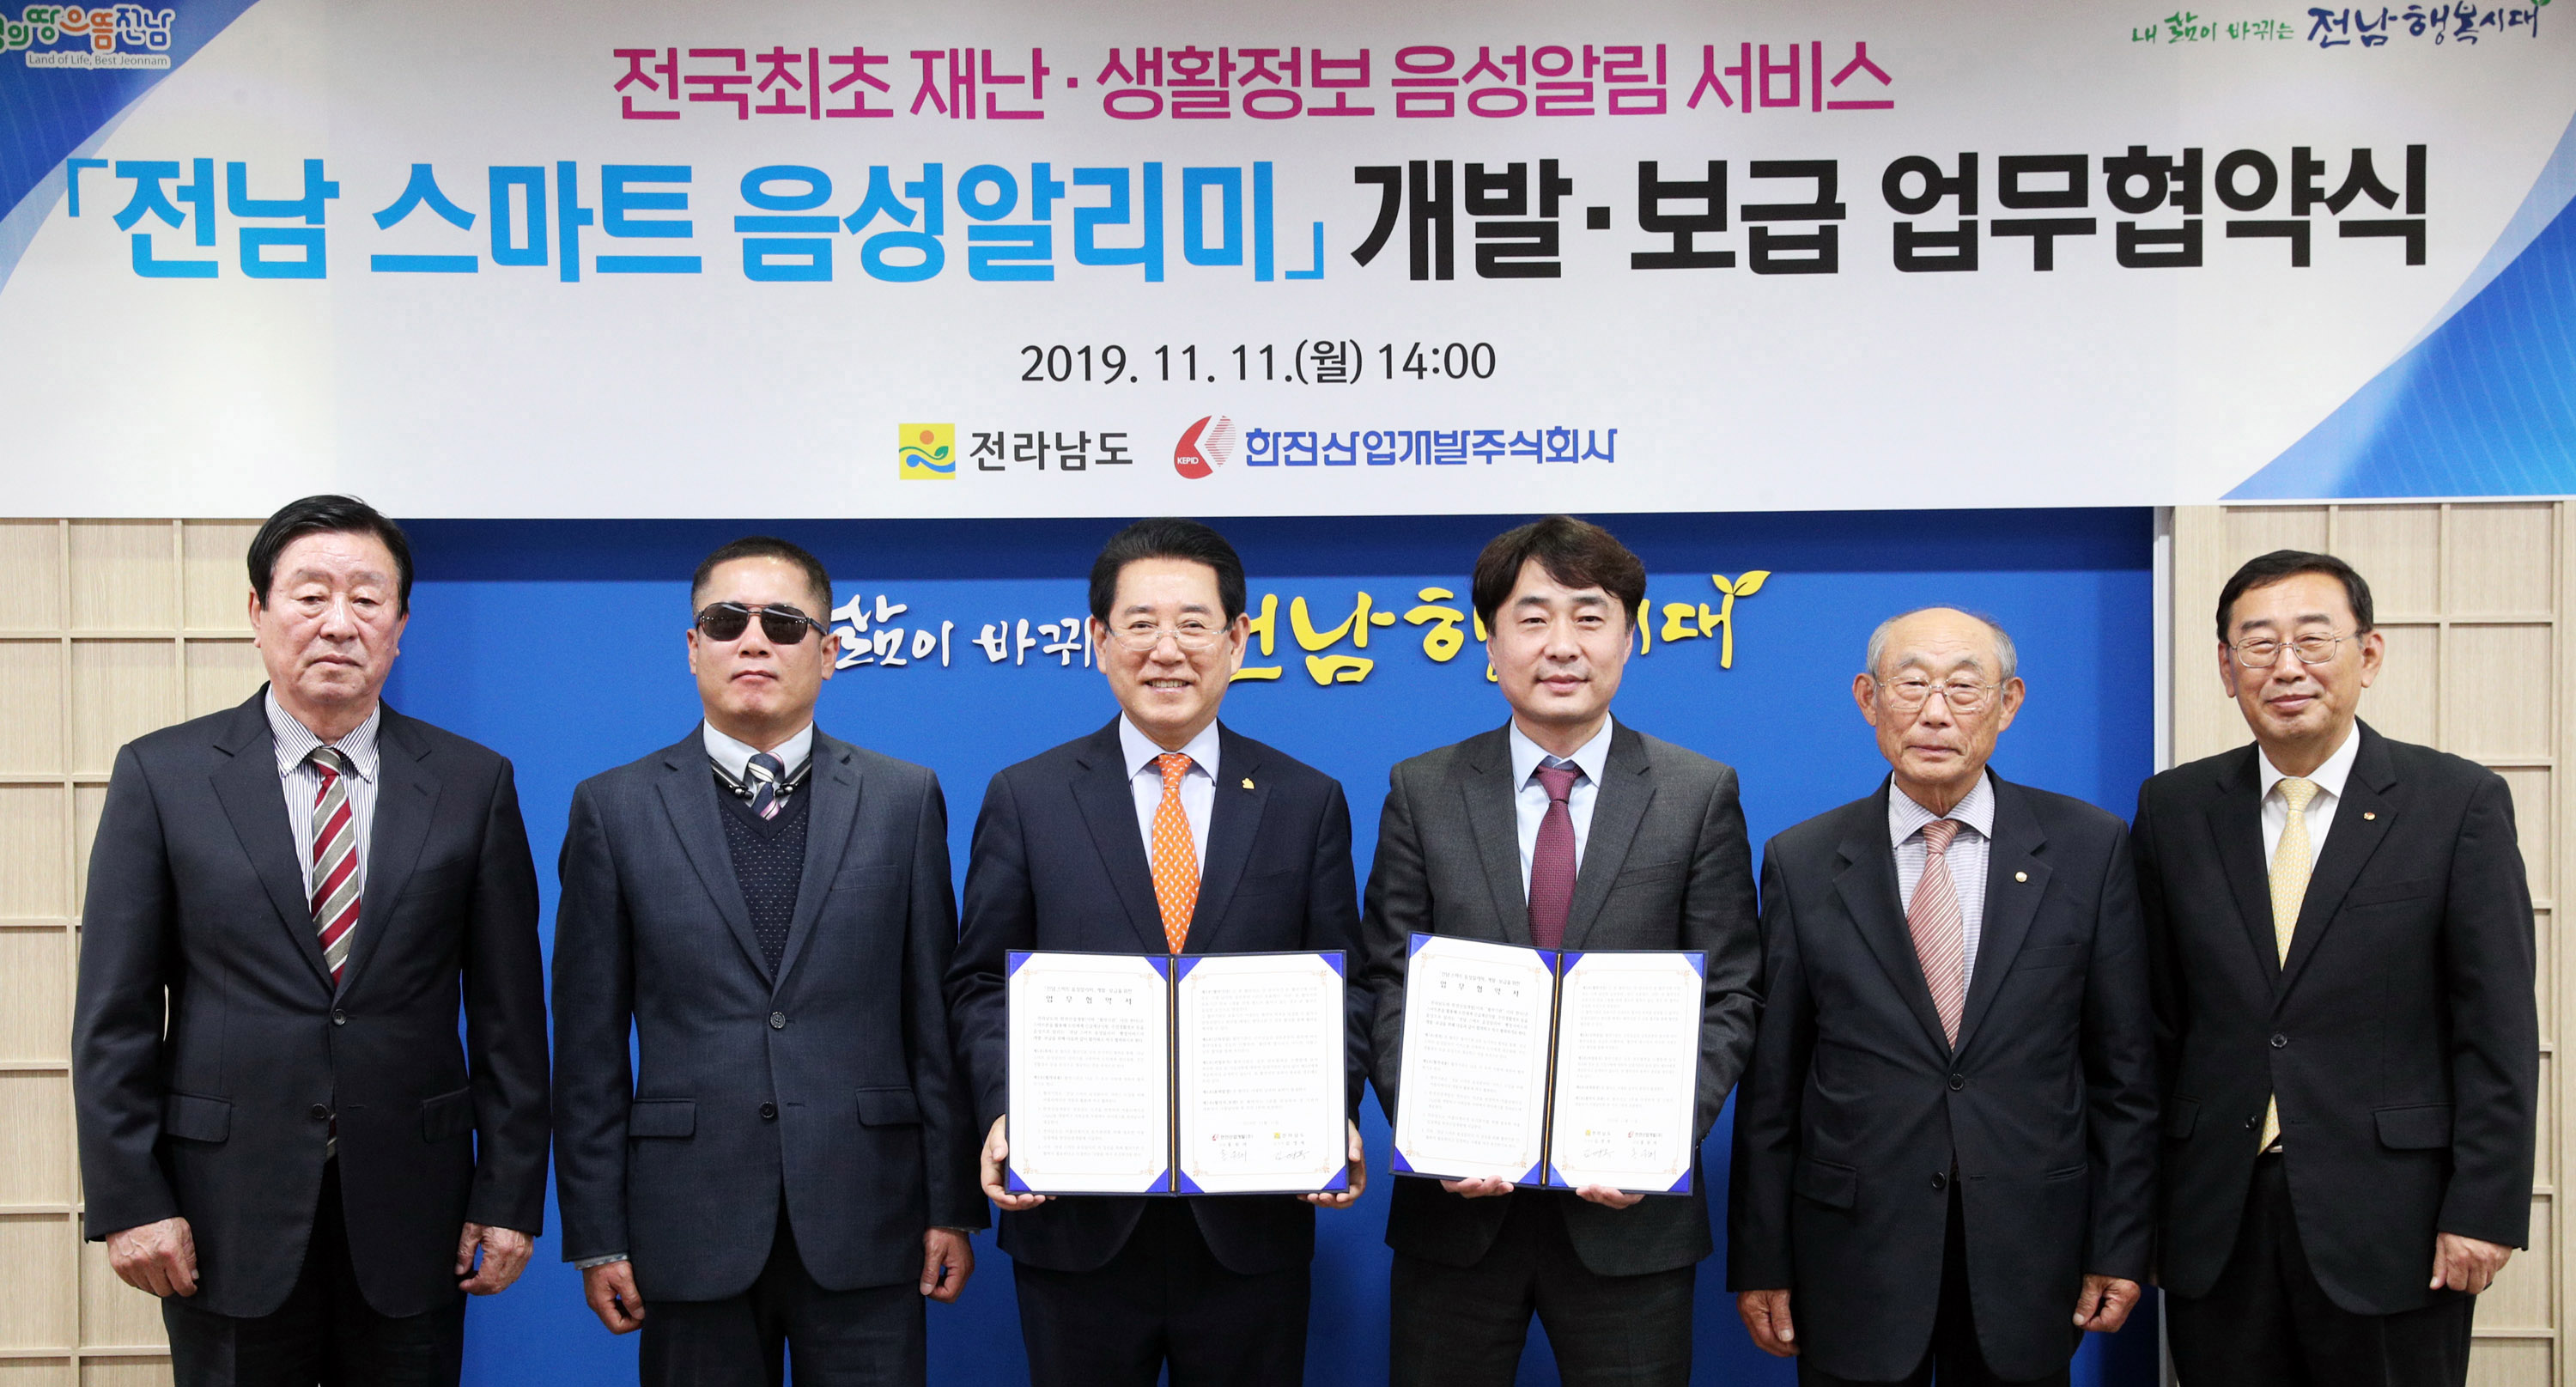 ‘전남 스마트 음성알리미‘ 개발ㆍ보급 업무협약1